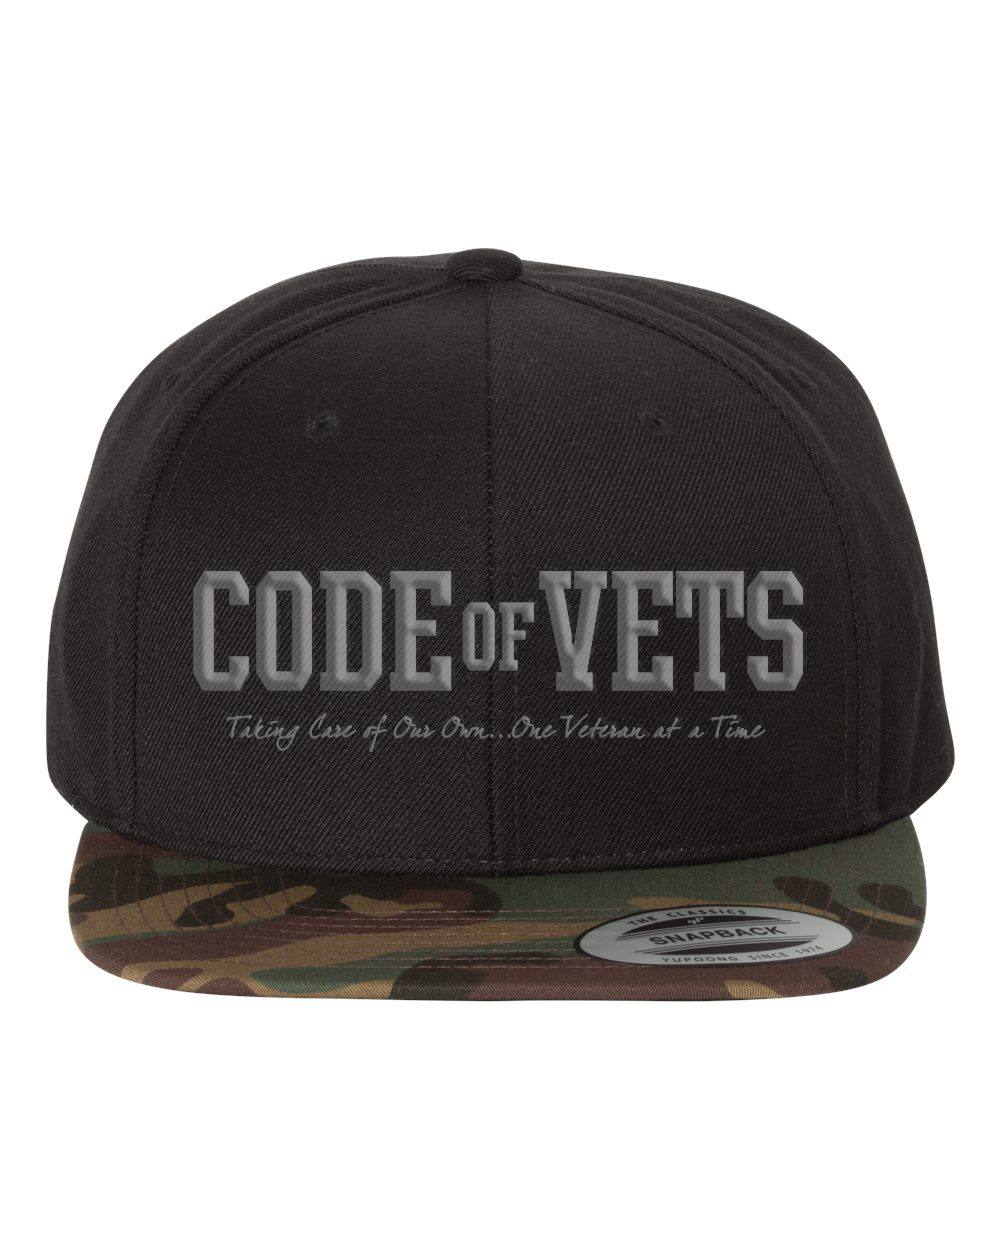 Code of Vets - Black/Camo Hat